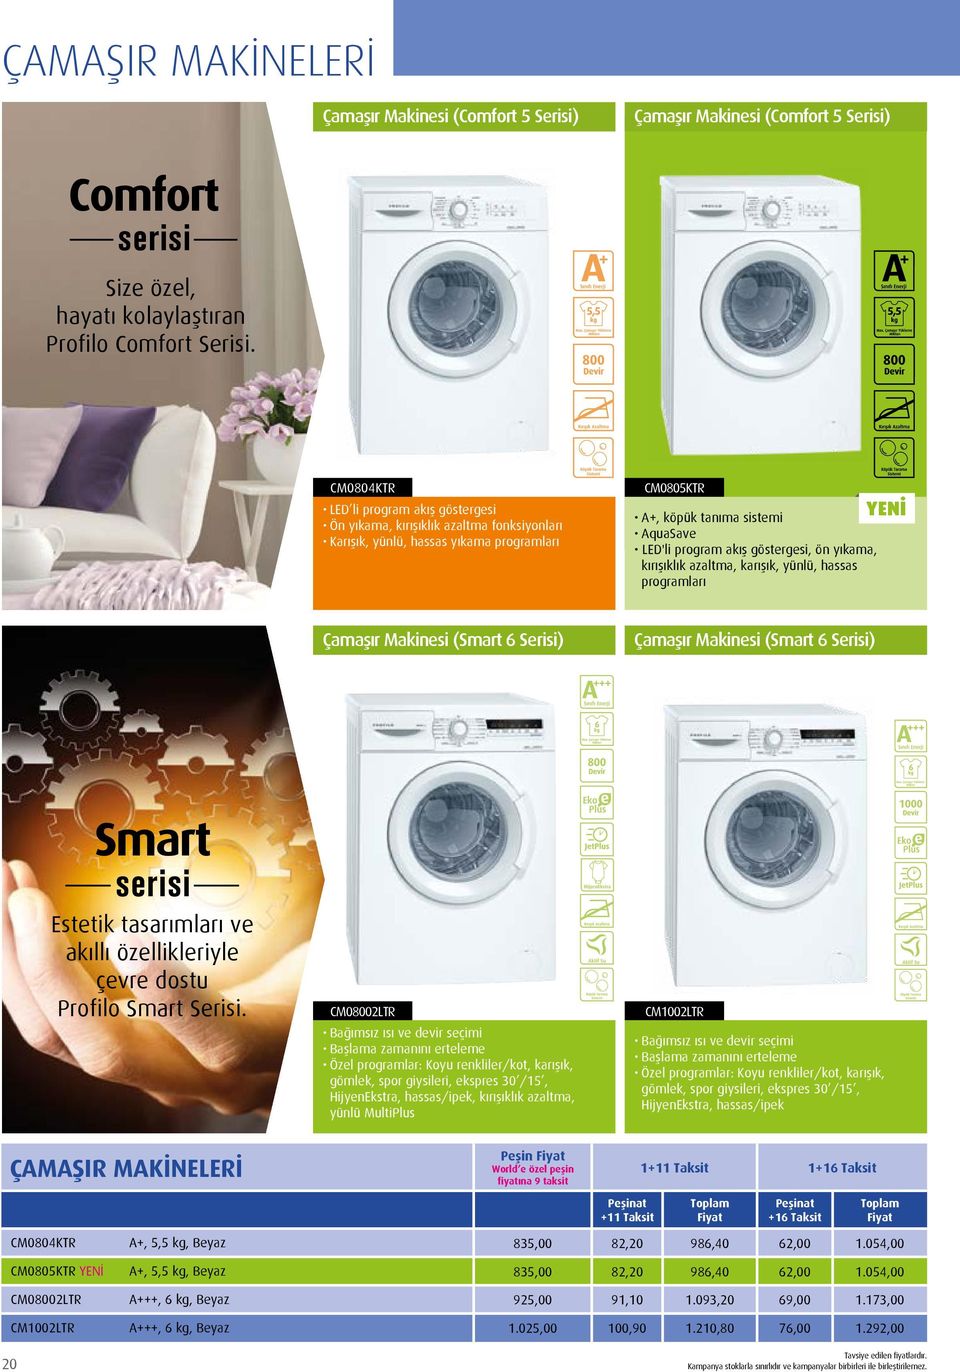 göstergesi, ön yıkama, kırışıklık azaltma, karışık, yünlü, hassas programları YENİ Çamaşır Makinesi (Smart 6 Serisi) Çamaşır Makinesi (Smart 6 Serisi) Smart serisi Estetik tasarımları ve akıllı